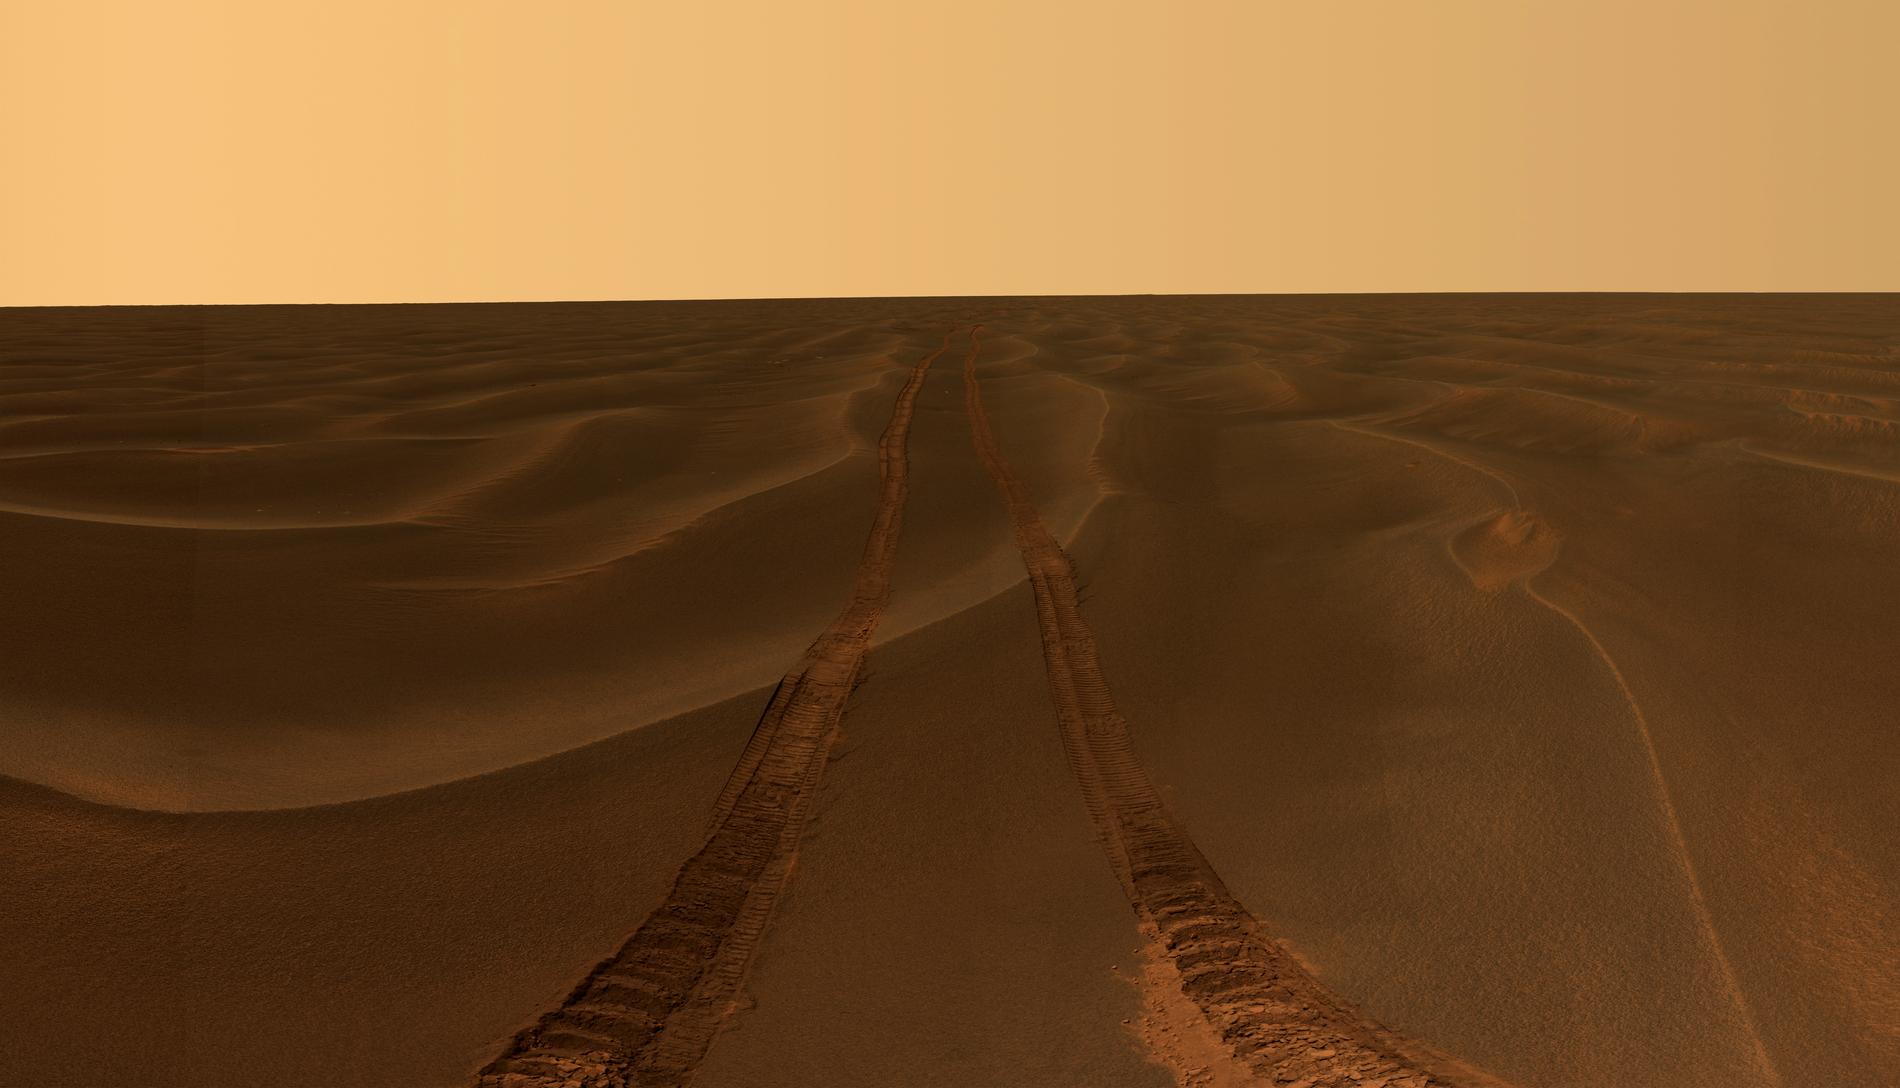 Har du kört vilse, Oppy? Bild tagen av Opportunity 2014, då sonden var i liknande knipa efter att ha kört fast i sanden på Meridiani-slätten.